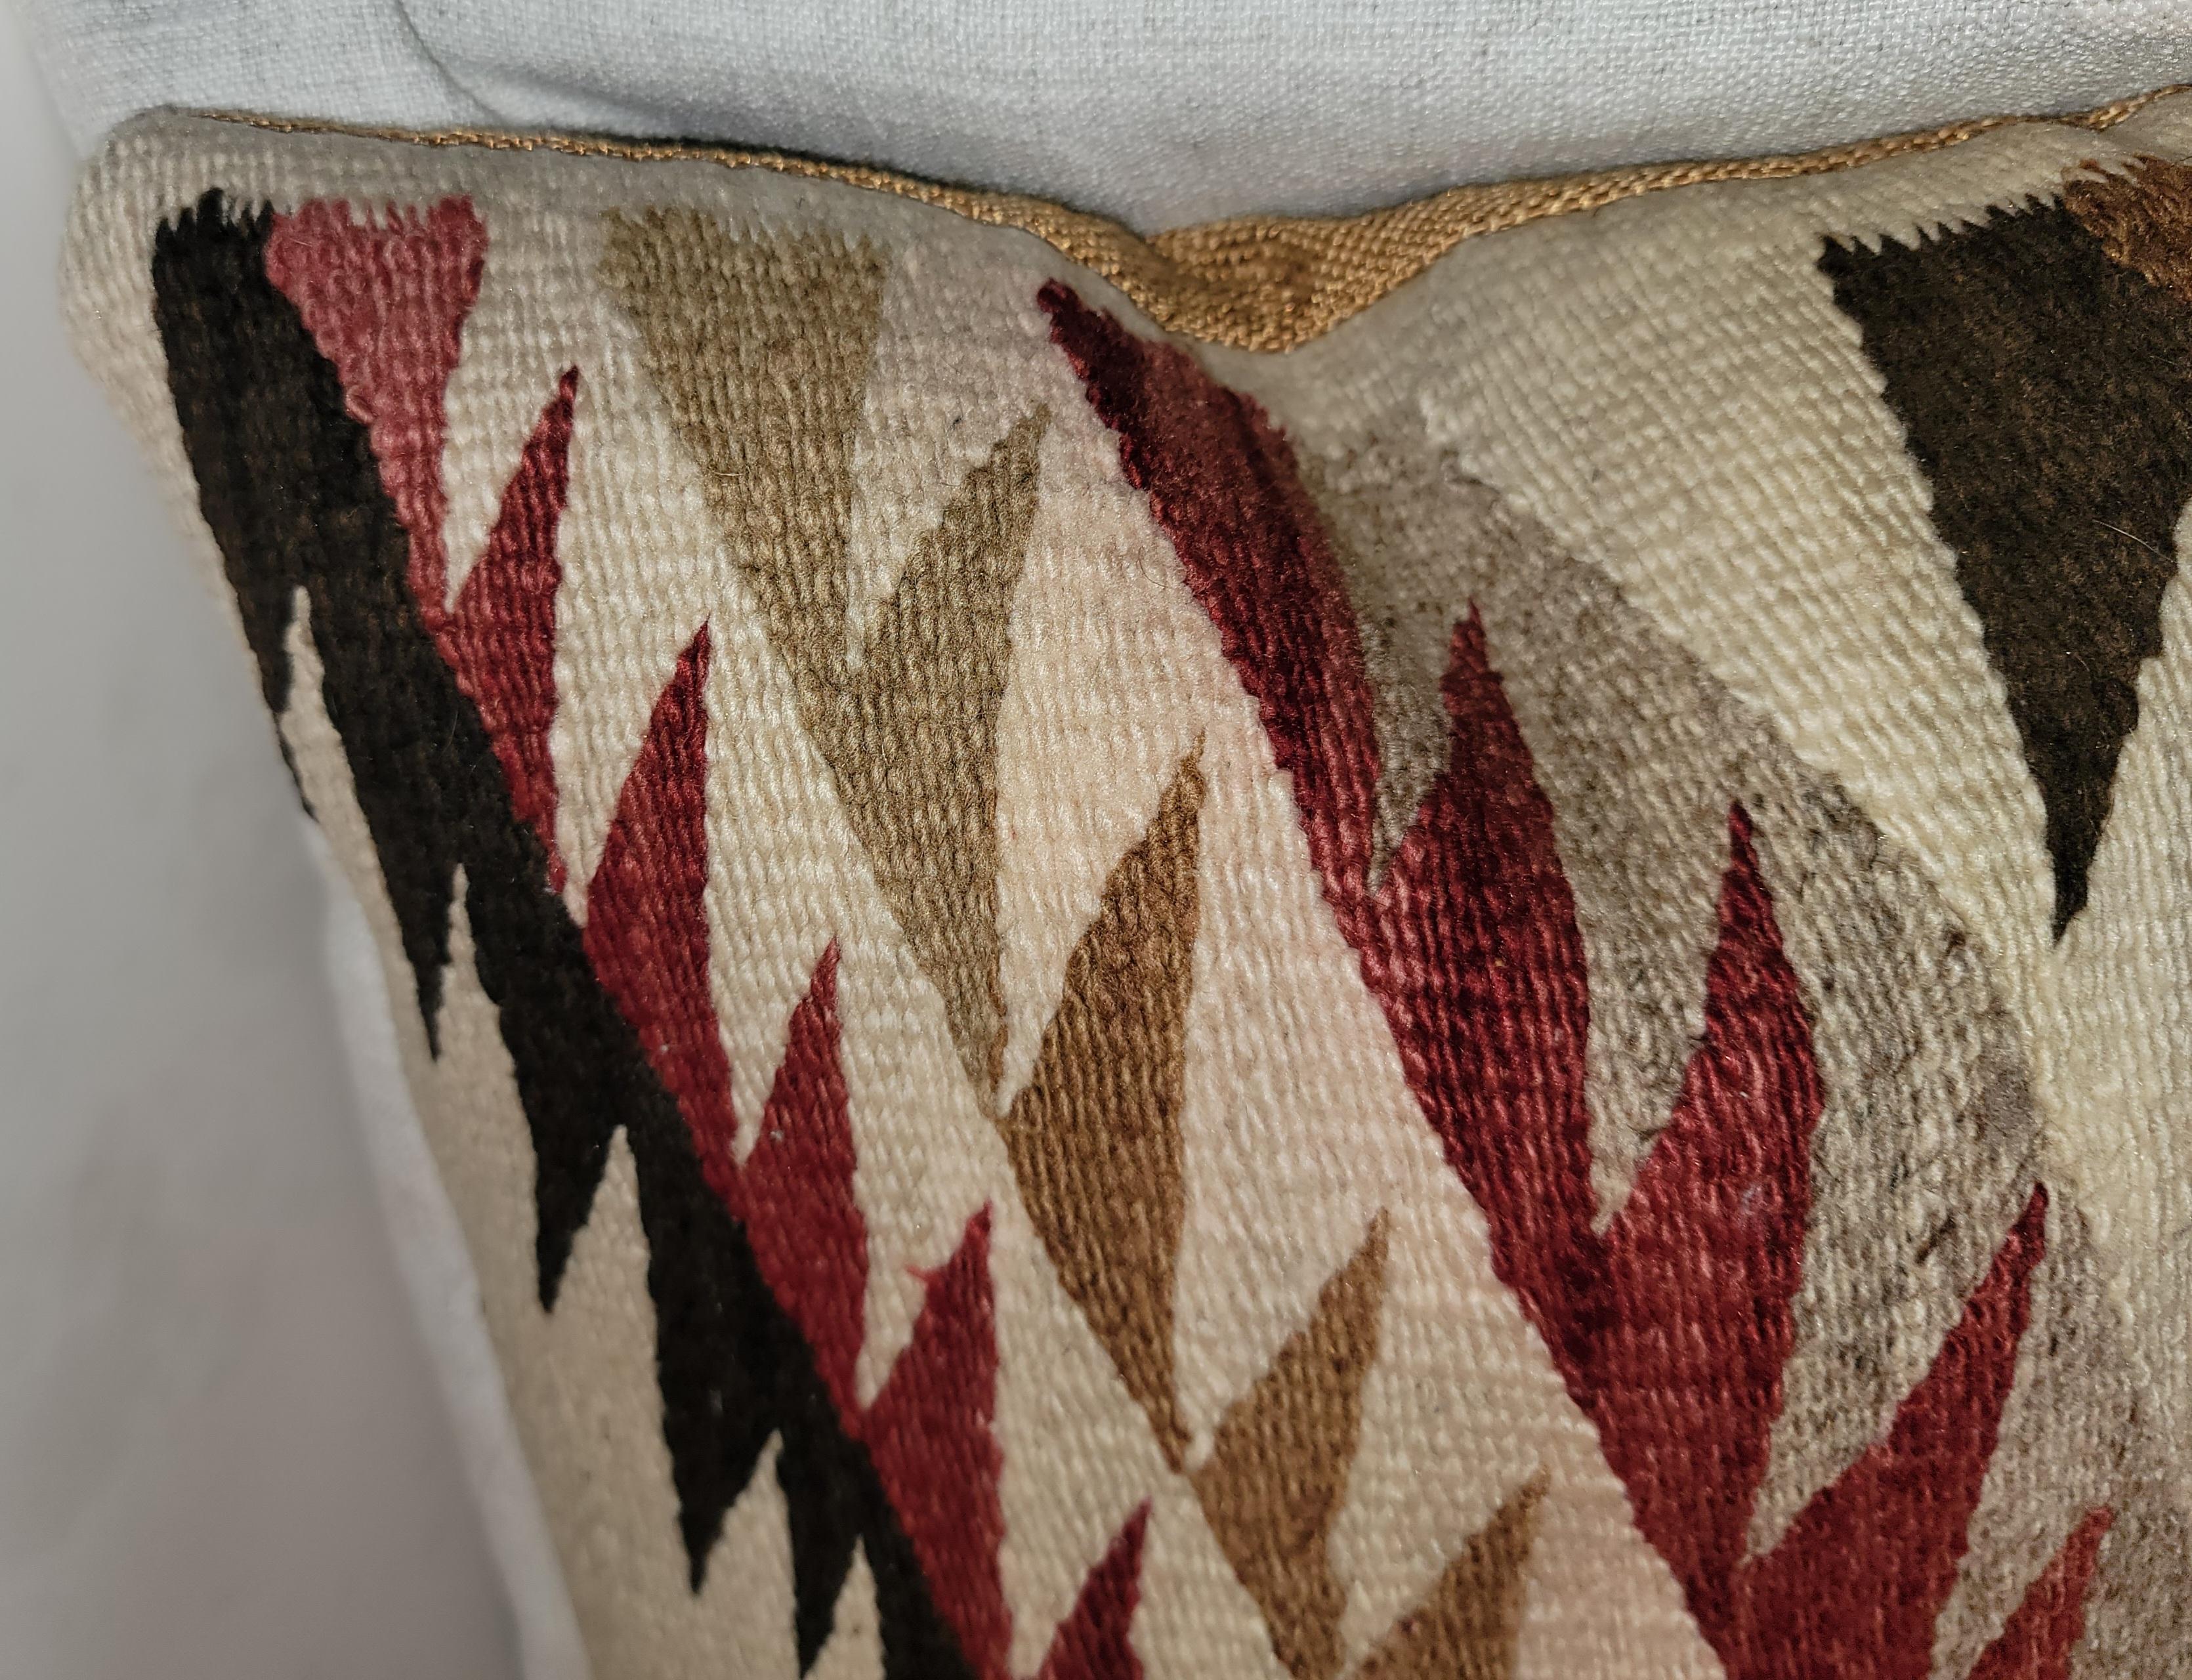 Diese erstaunliche Auge Blender Navajo Indianer Weberei Nackenkissen ist in fantatsic Farben und Zustand.die Rückseite ist in einem tan Baumwolle Leinen. Die Einsätze sind mit Daunen und Federn gefüllt.